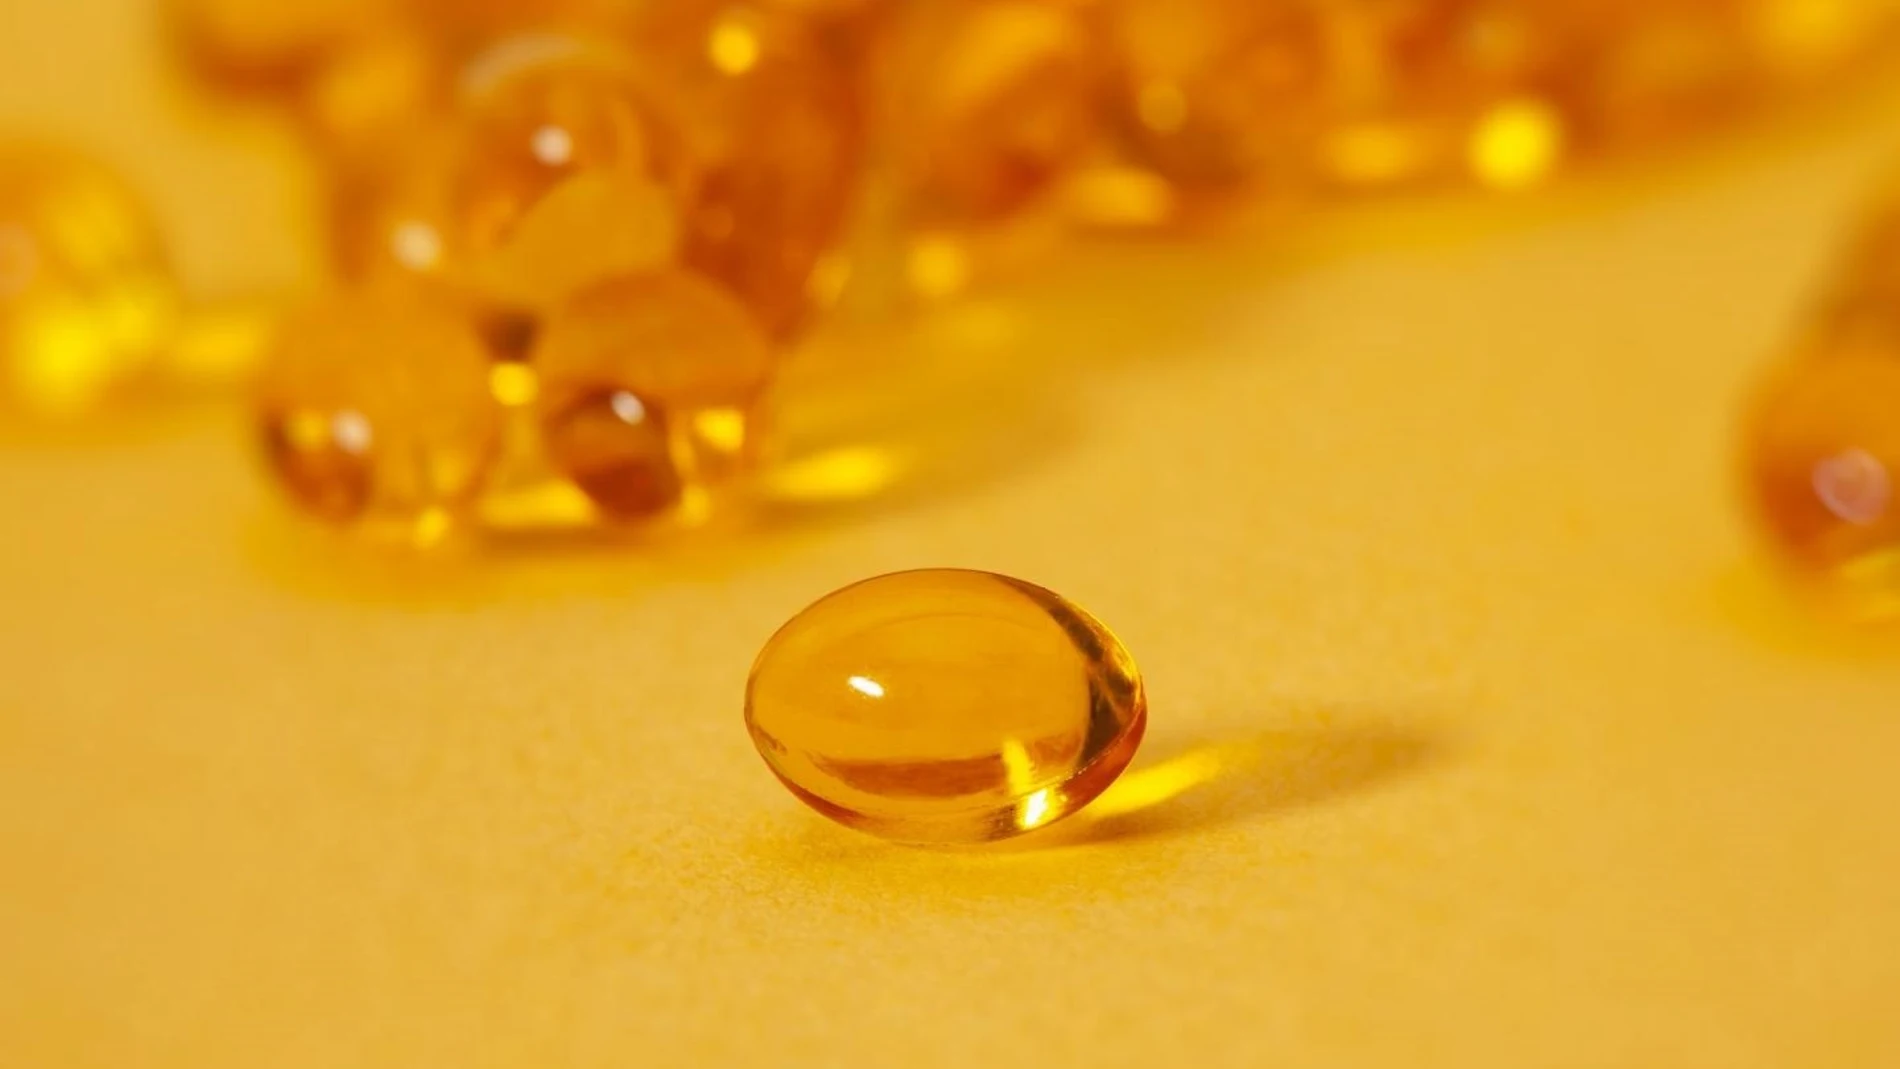 Investigadores andaluces han demostrado que la vitamina D reduce el riesgo de mortalidad en pacientes con Covid-19